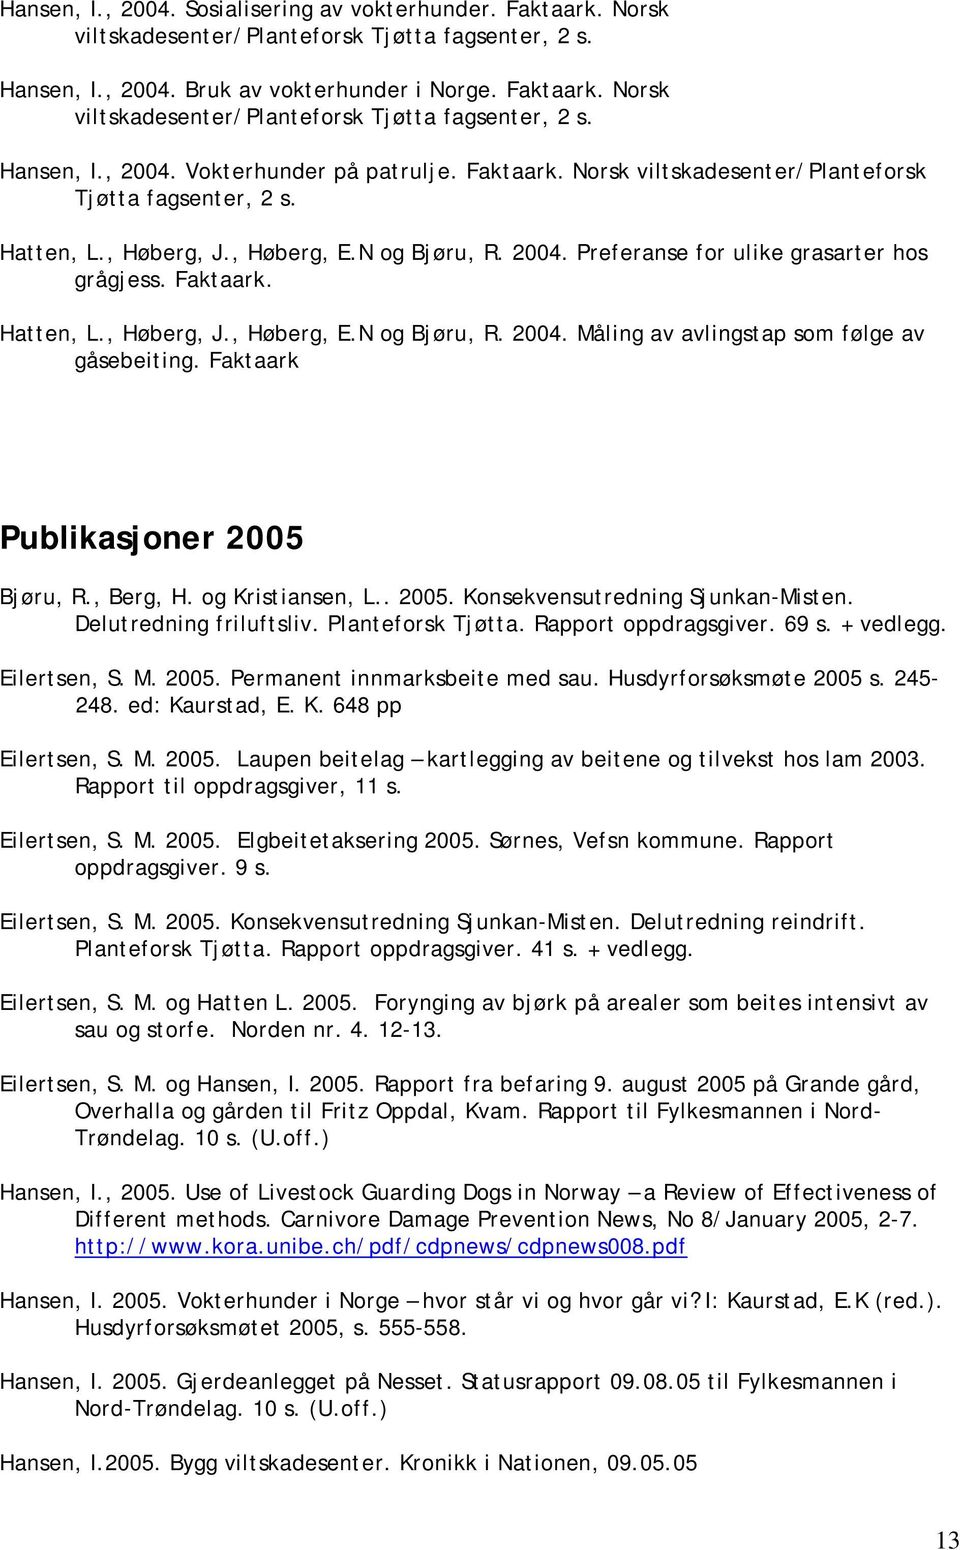 Faktaark Publikasjoner 2005 Bjøru, R., Berg, H. og Kristiansen, L.. 2005. Konsekvensutredning Sjunkan-Misten. Delutredning friluftsliv. Planteforsk Tjøtta. Rapport oppdragsgiver. 69 s. + vedlegg.